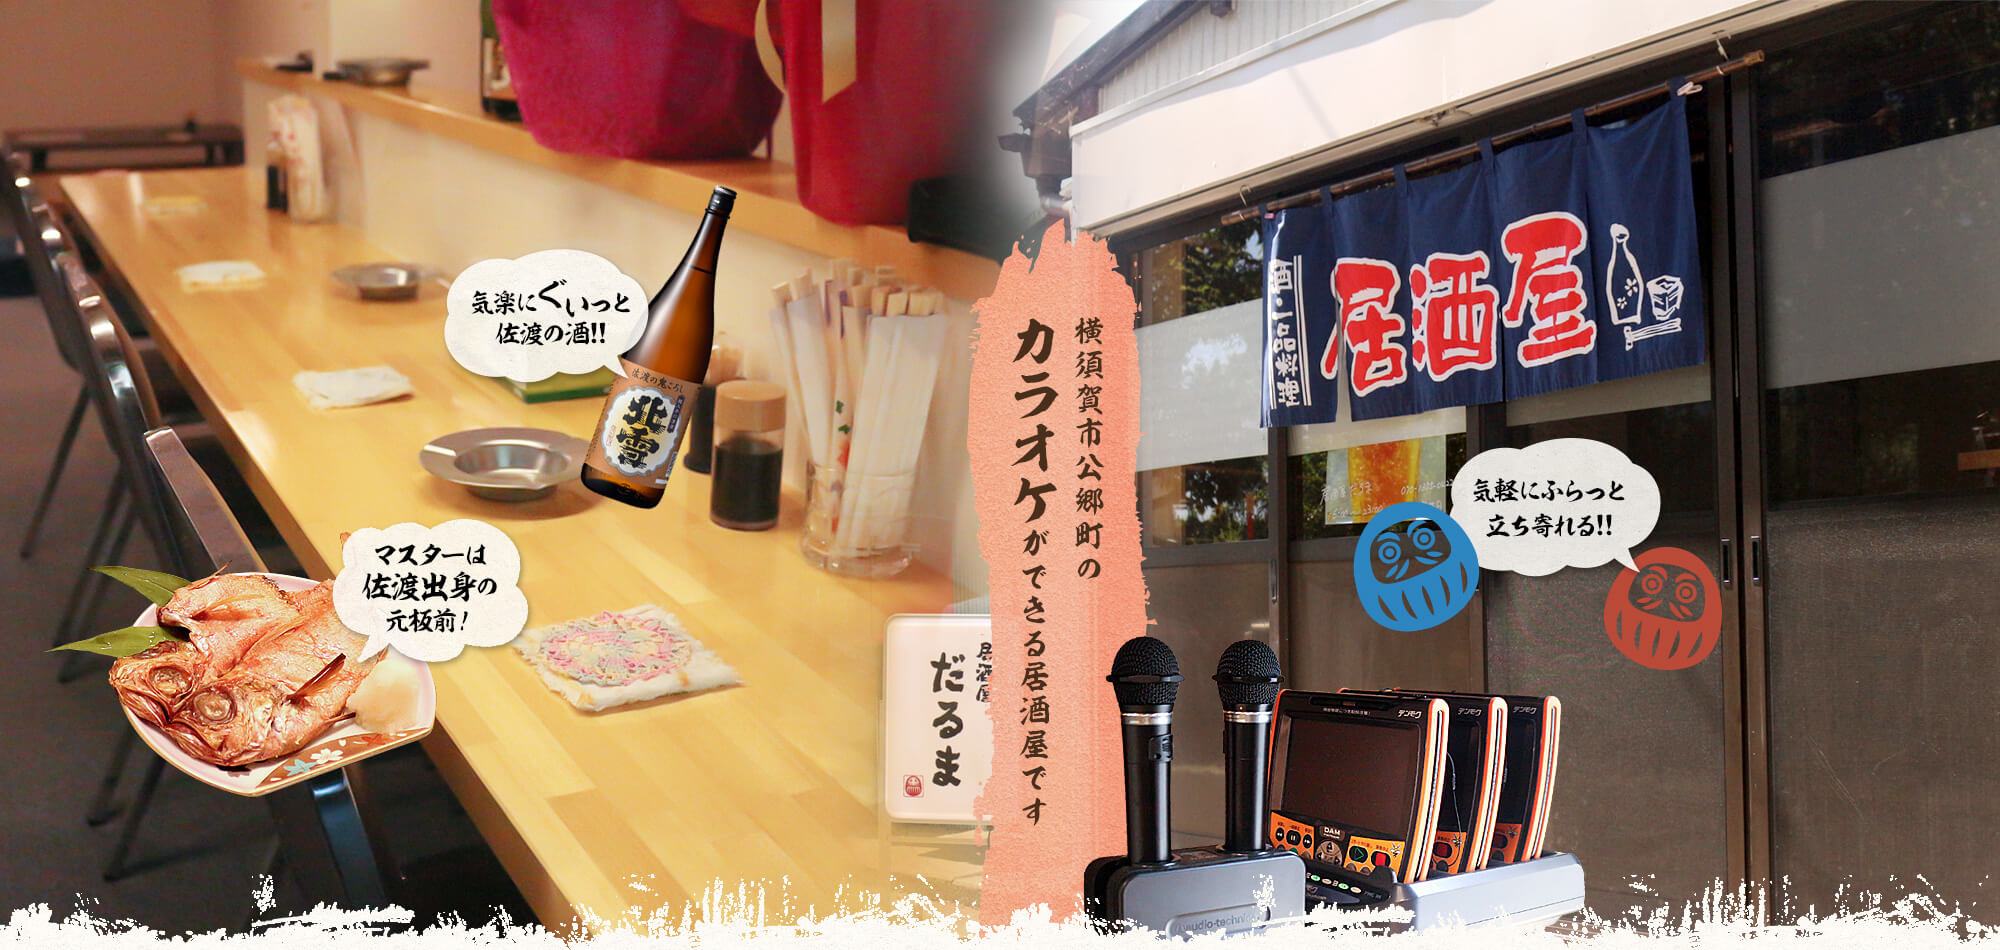 横須賀市公郷町のカラオケができる居酒屋です